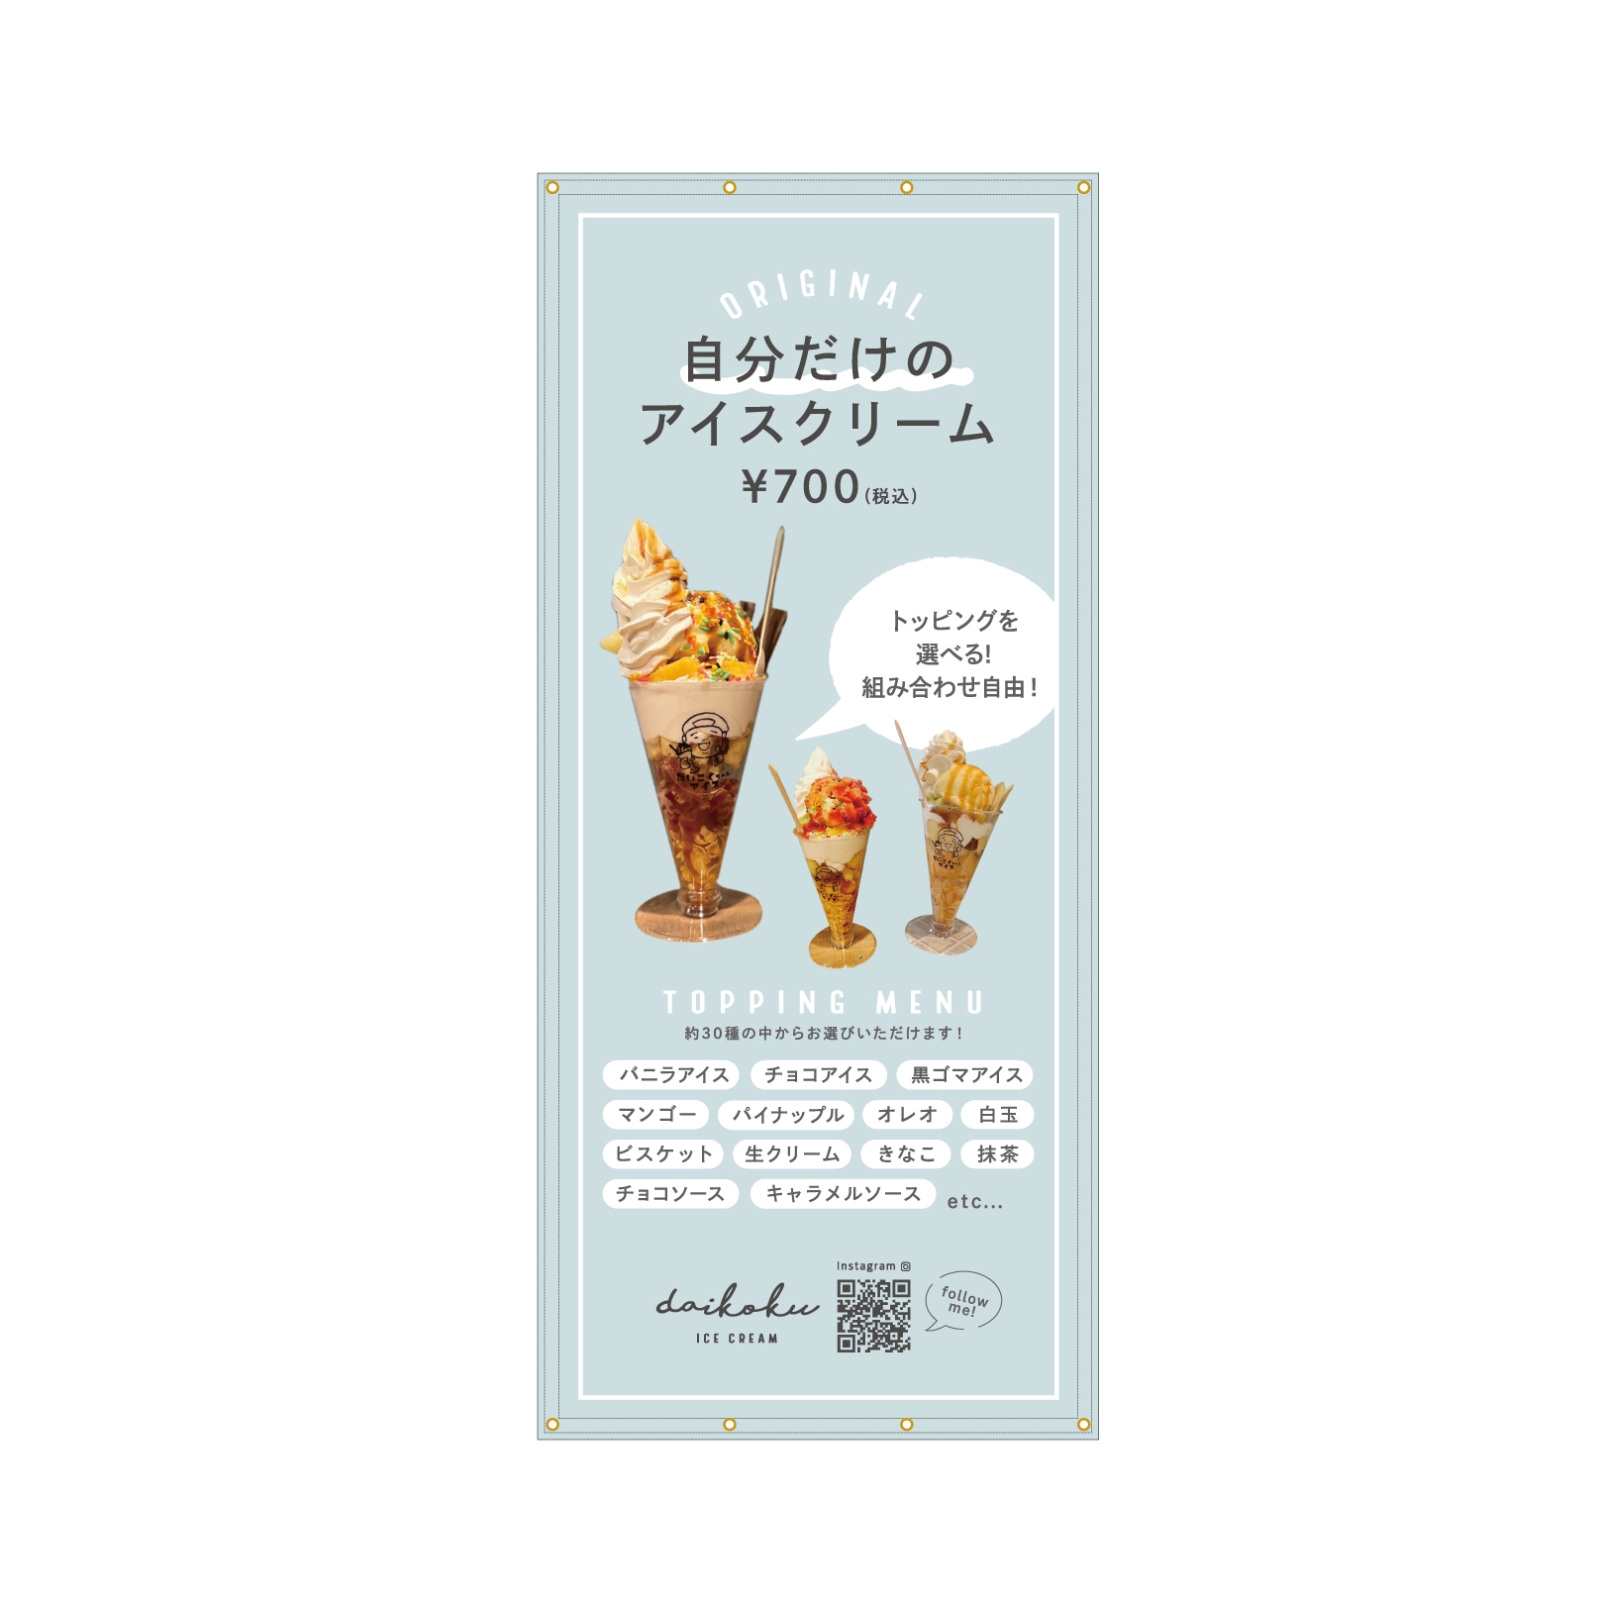 アイスクリーム屋さんの垂れ幕